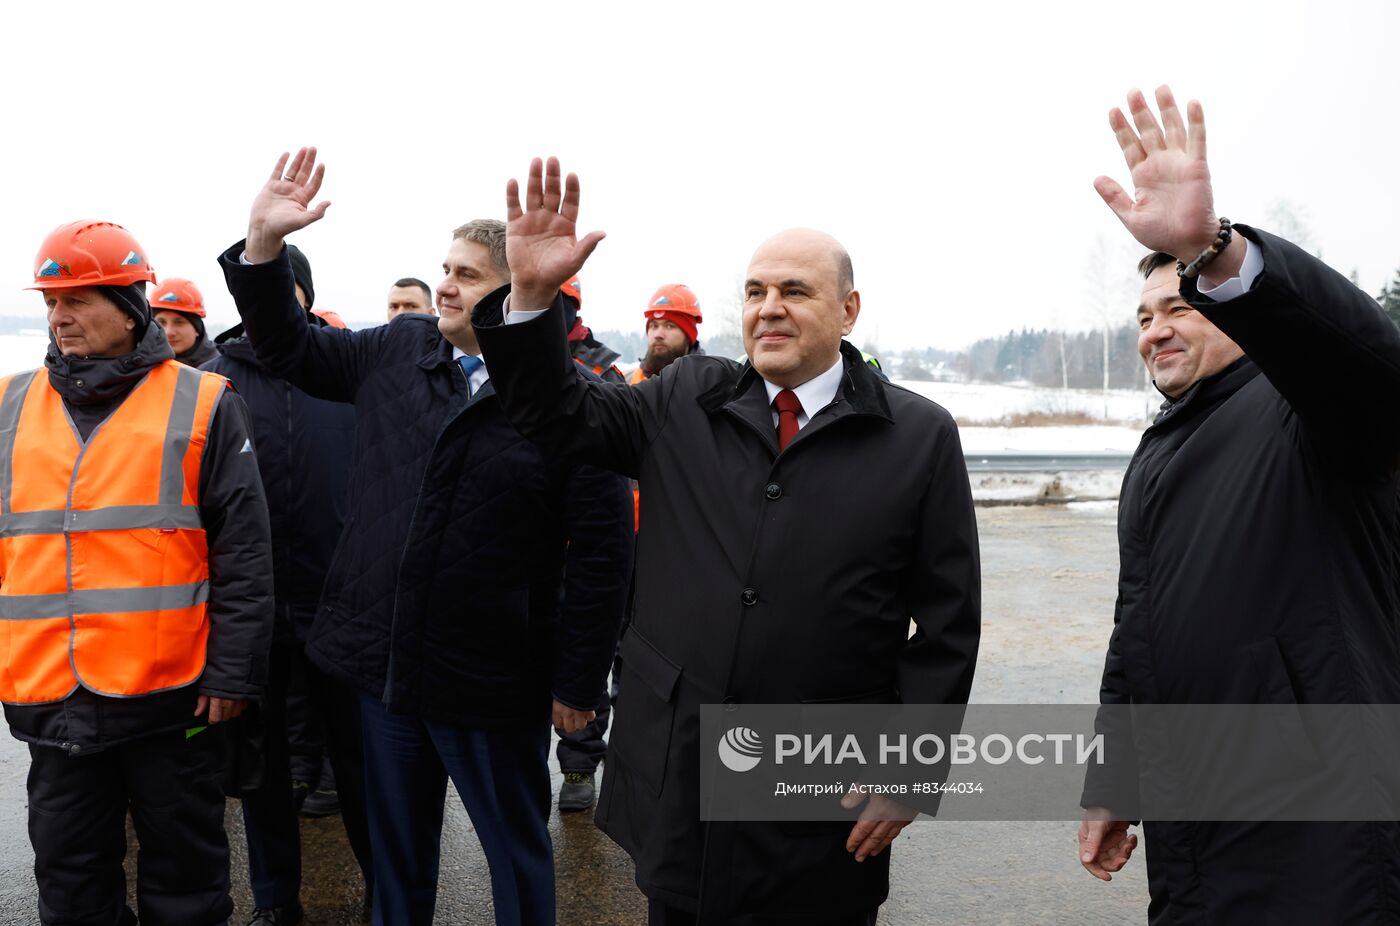 Премьер-министр РФ М. Мишустин открыл ряд объектов дорожно-транспортной инфраструктуры